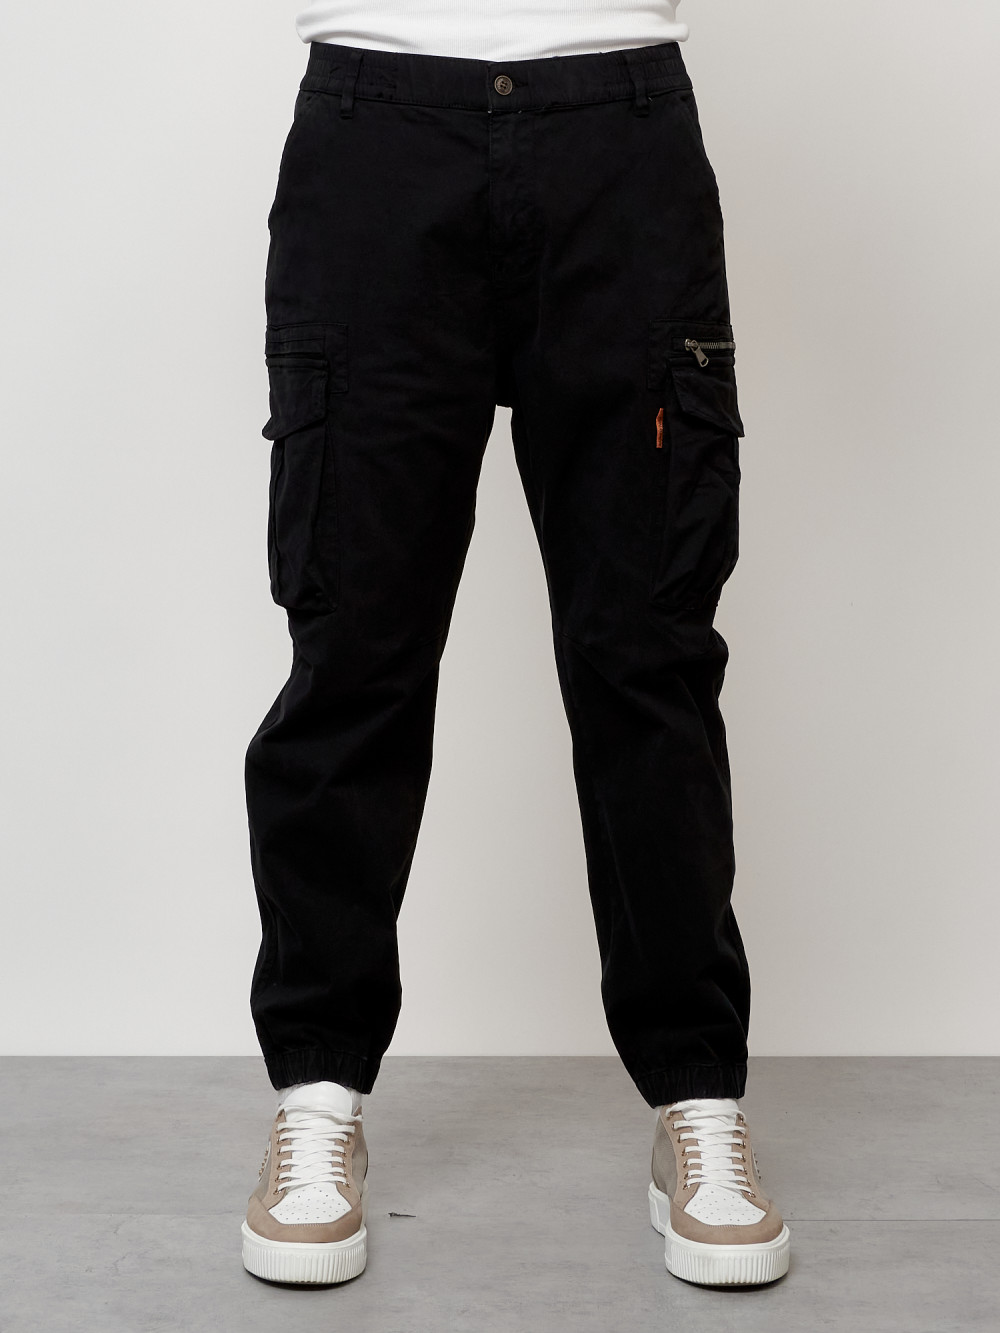 Джинсы карго мужские с накладными карманами черного цвета 2425Ch